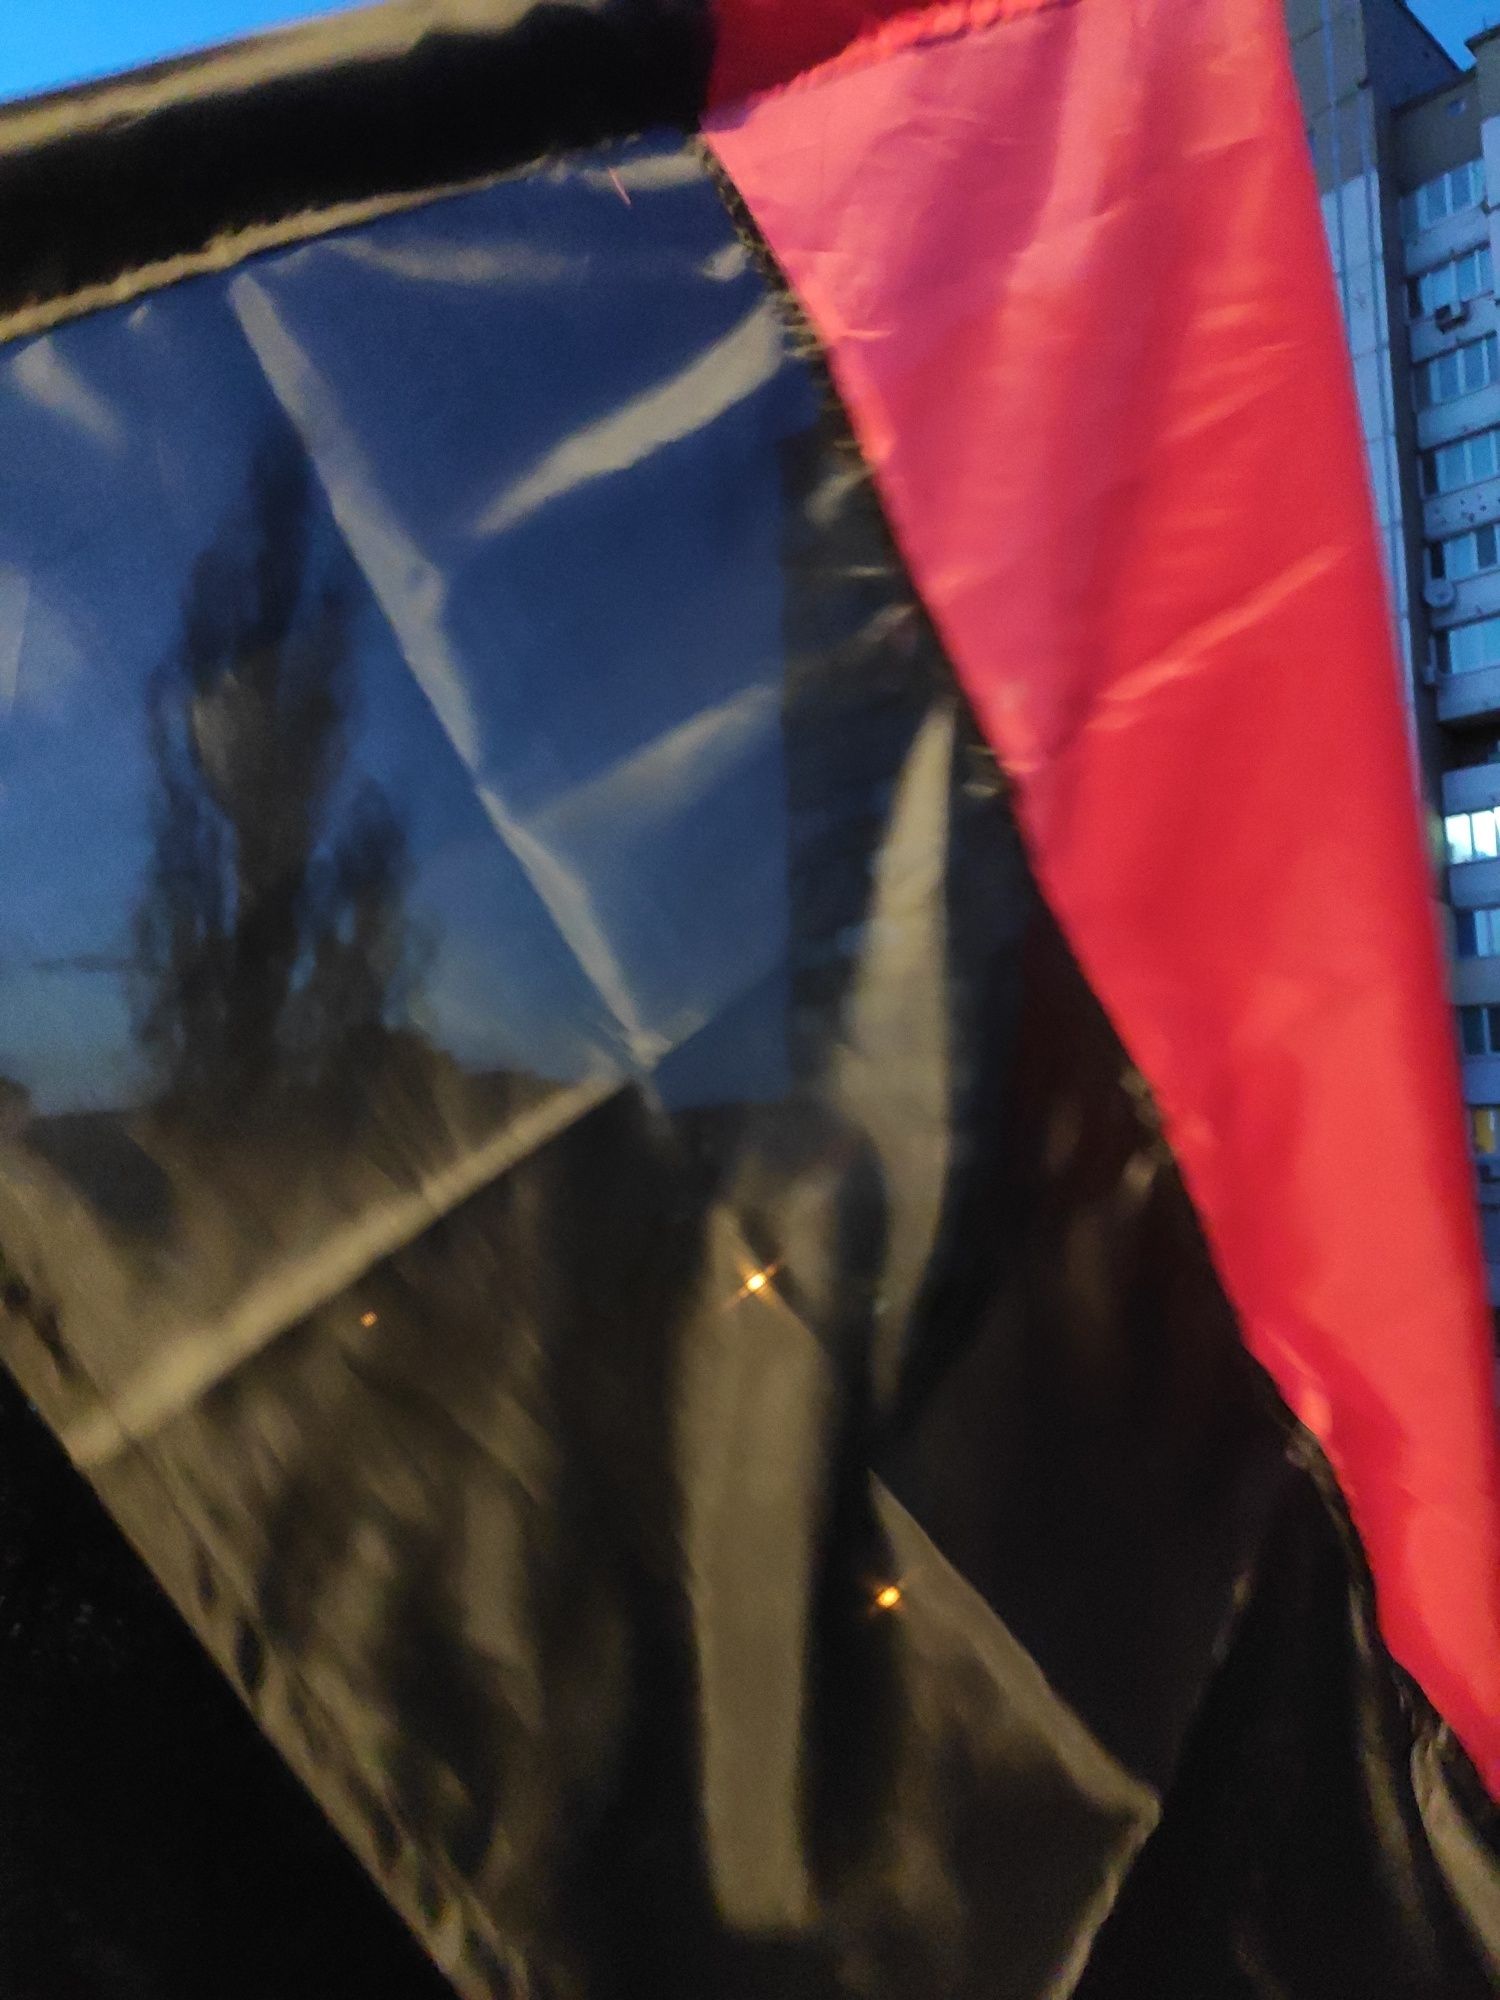 Прапор УПА габардин, подкладка, стяг. Флаг УПА правый сектор.